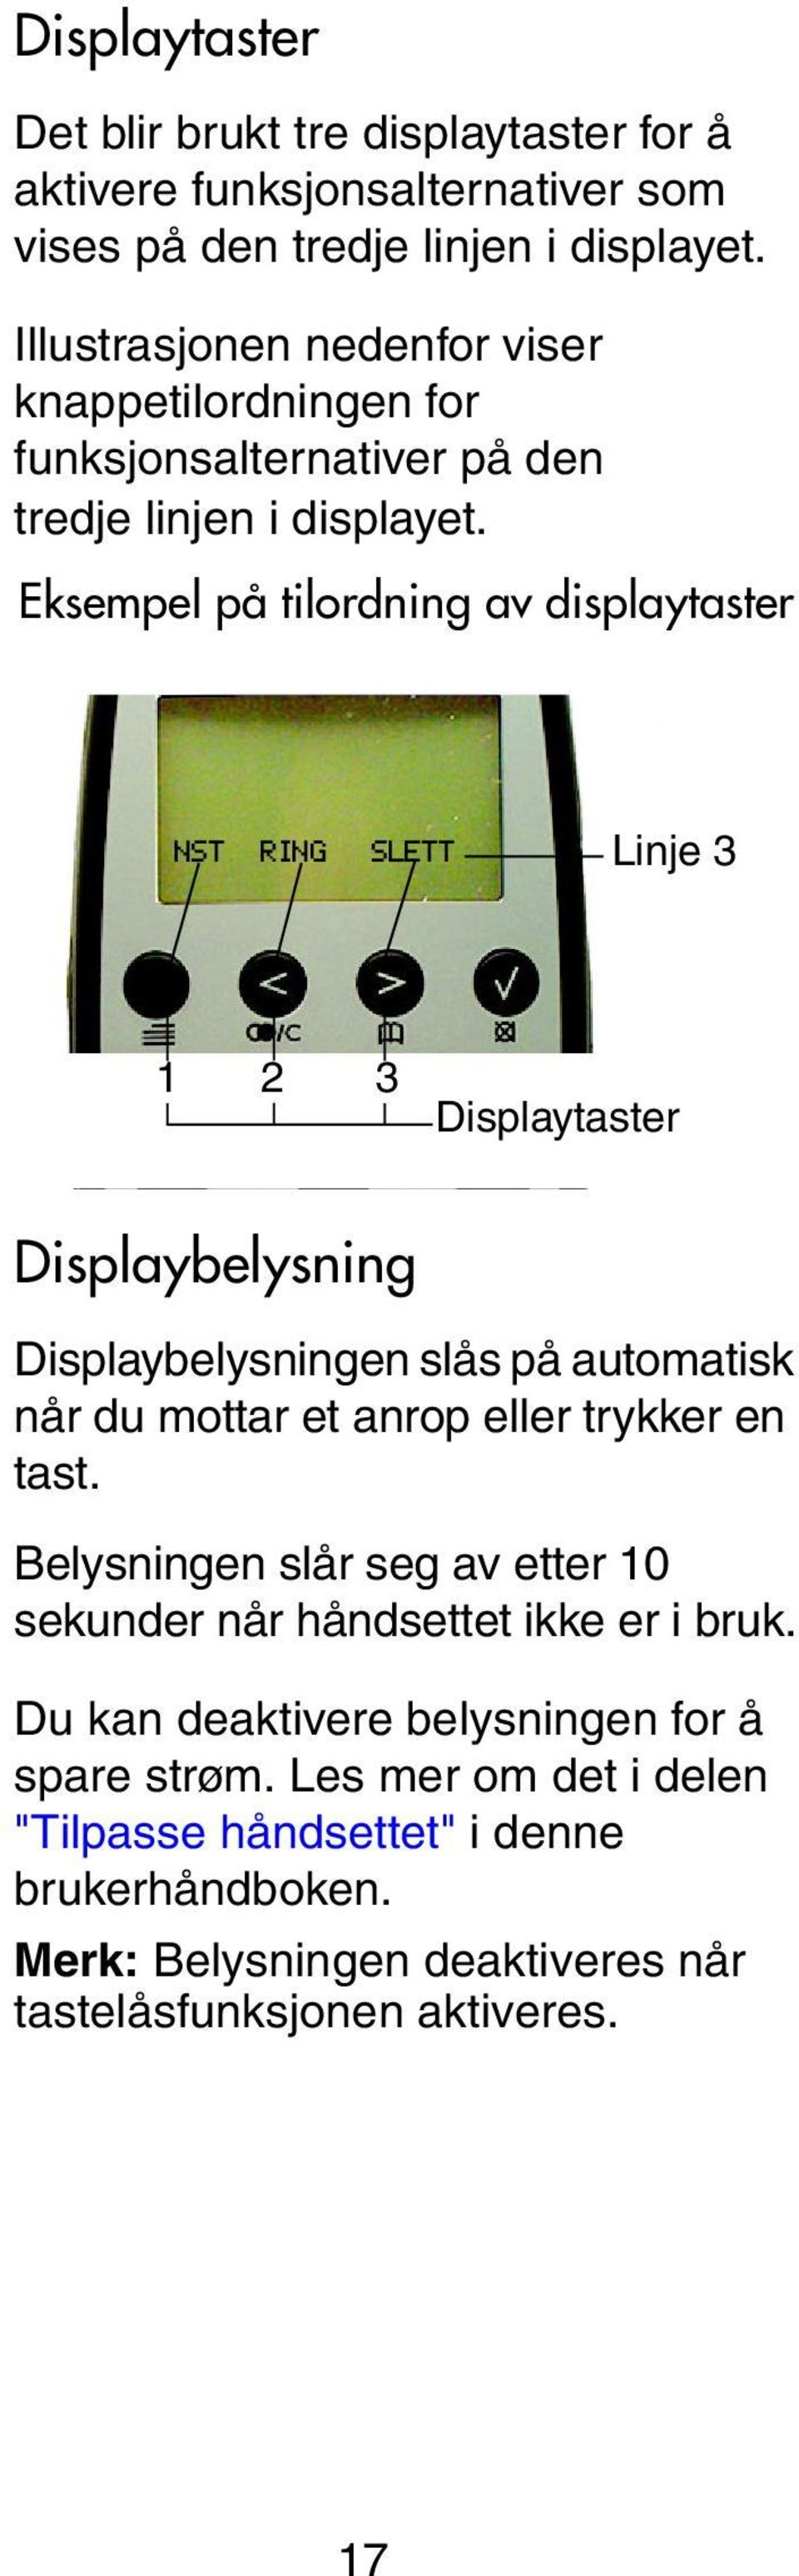 Eksempel på tilordning av displaytaster NST RING SLETT Displayta Linje 3 1 2 3 Displaytaster Displaybelysning Displaybelysningen slås på automatisk når du mottar et anrop